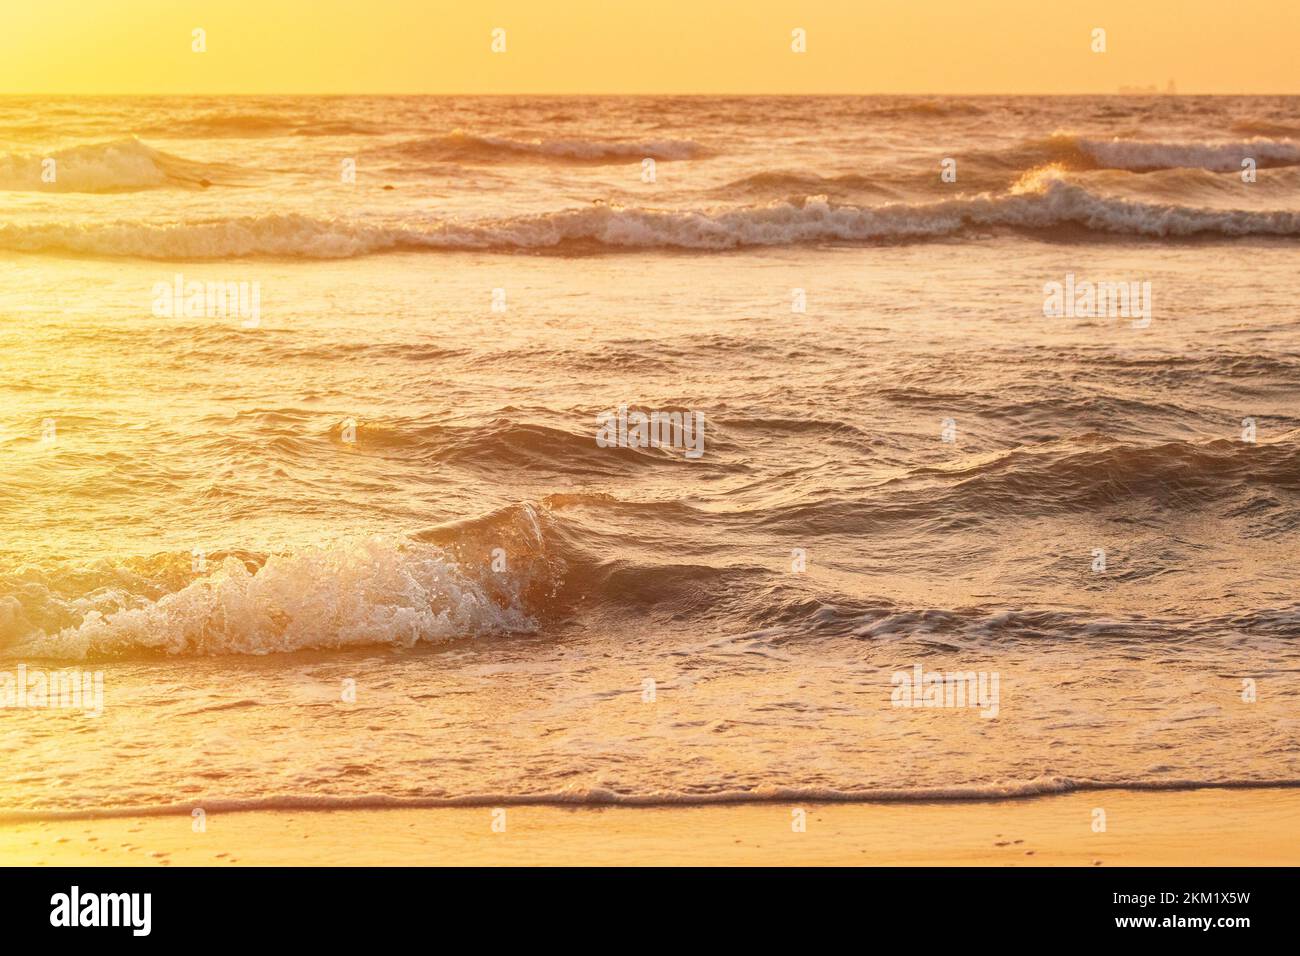 Sonnenuntergang über dem Meer. Natürlicher Sonnenaufgang, warme Farben über dem Meer mit kleinen Wellen. Ozeanwasser Schaum Spritzwasser Sandstrand bei Sonnenuntergang Stockfoto